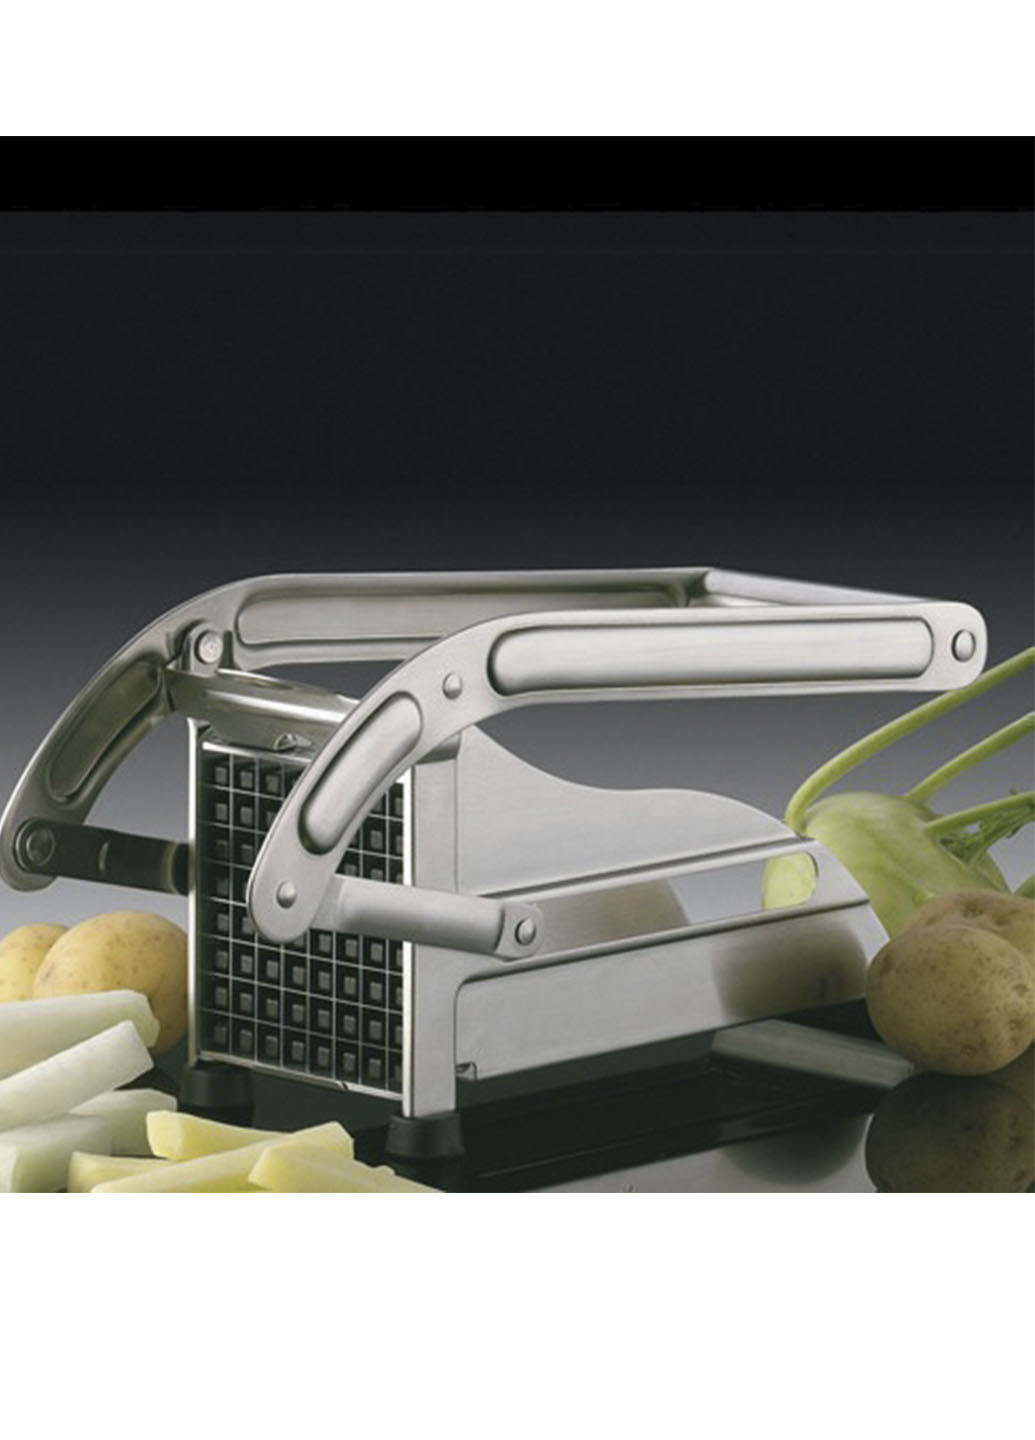 Картофелерезка (овощерезка) механическая, устройство для резки картофеля фри Potato Chipper Good Idea (252228998)